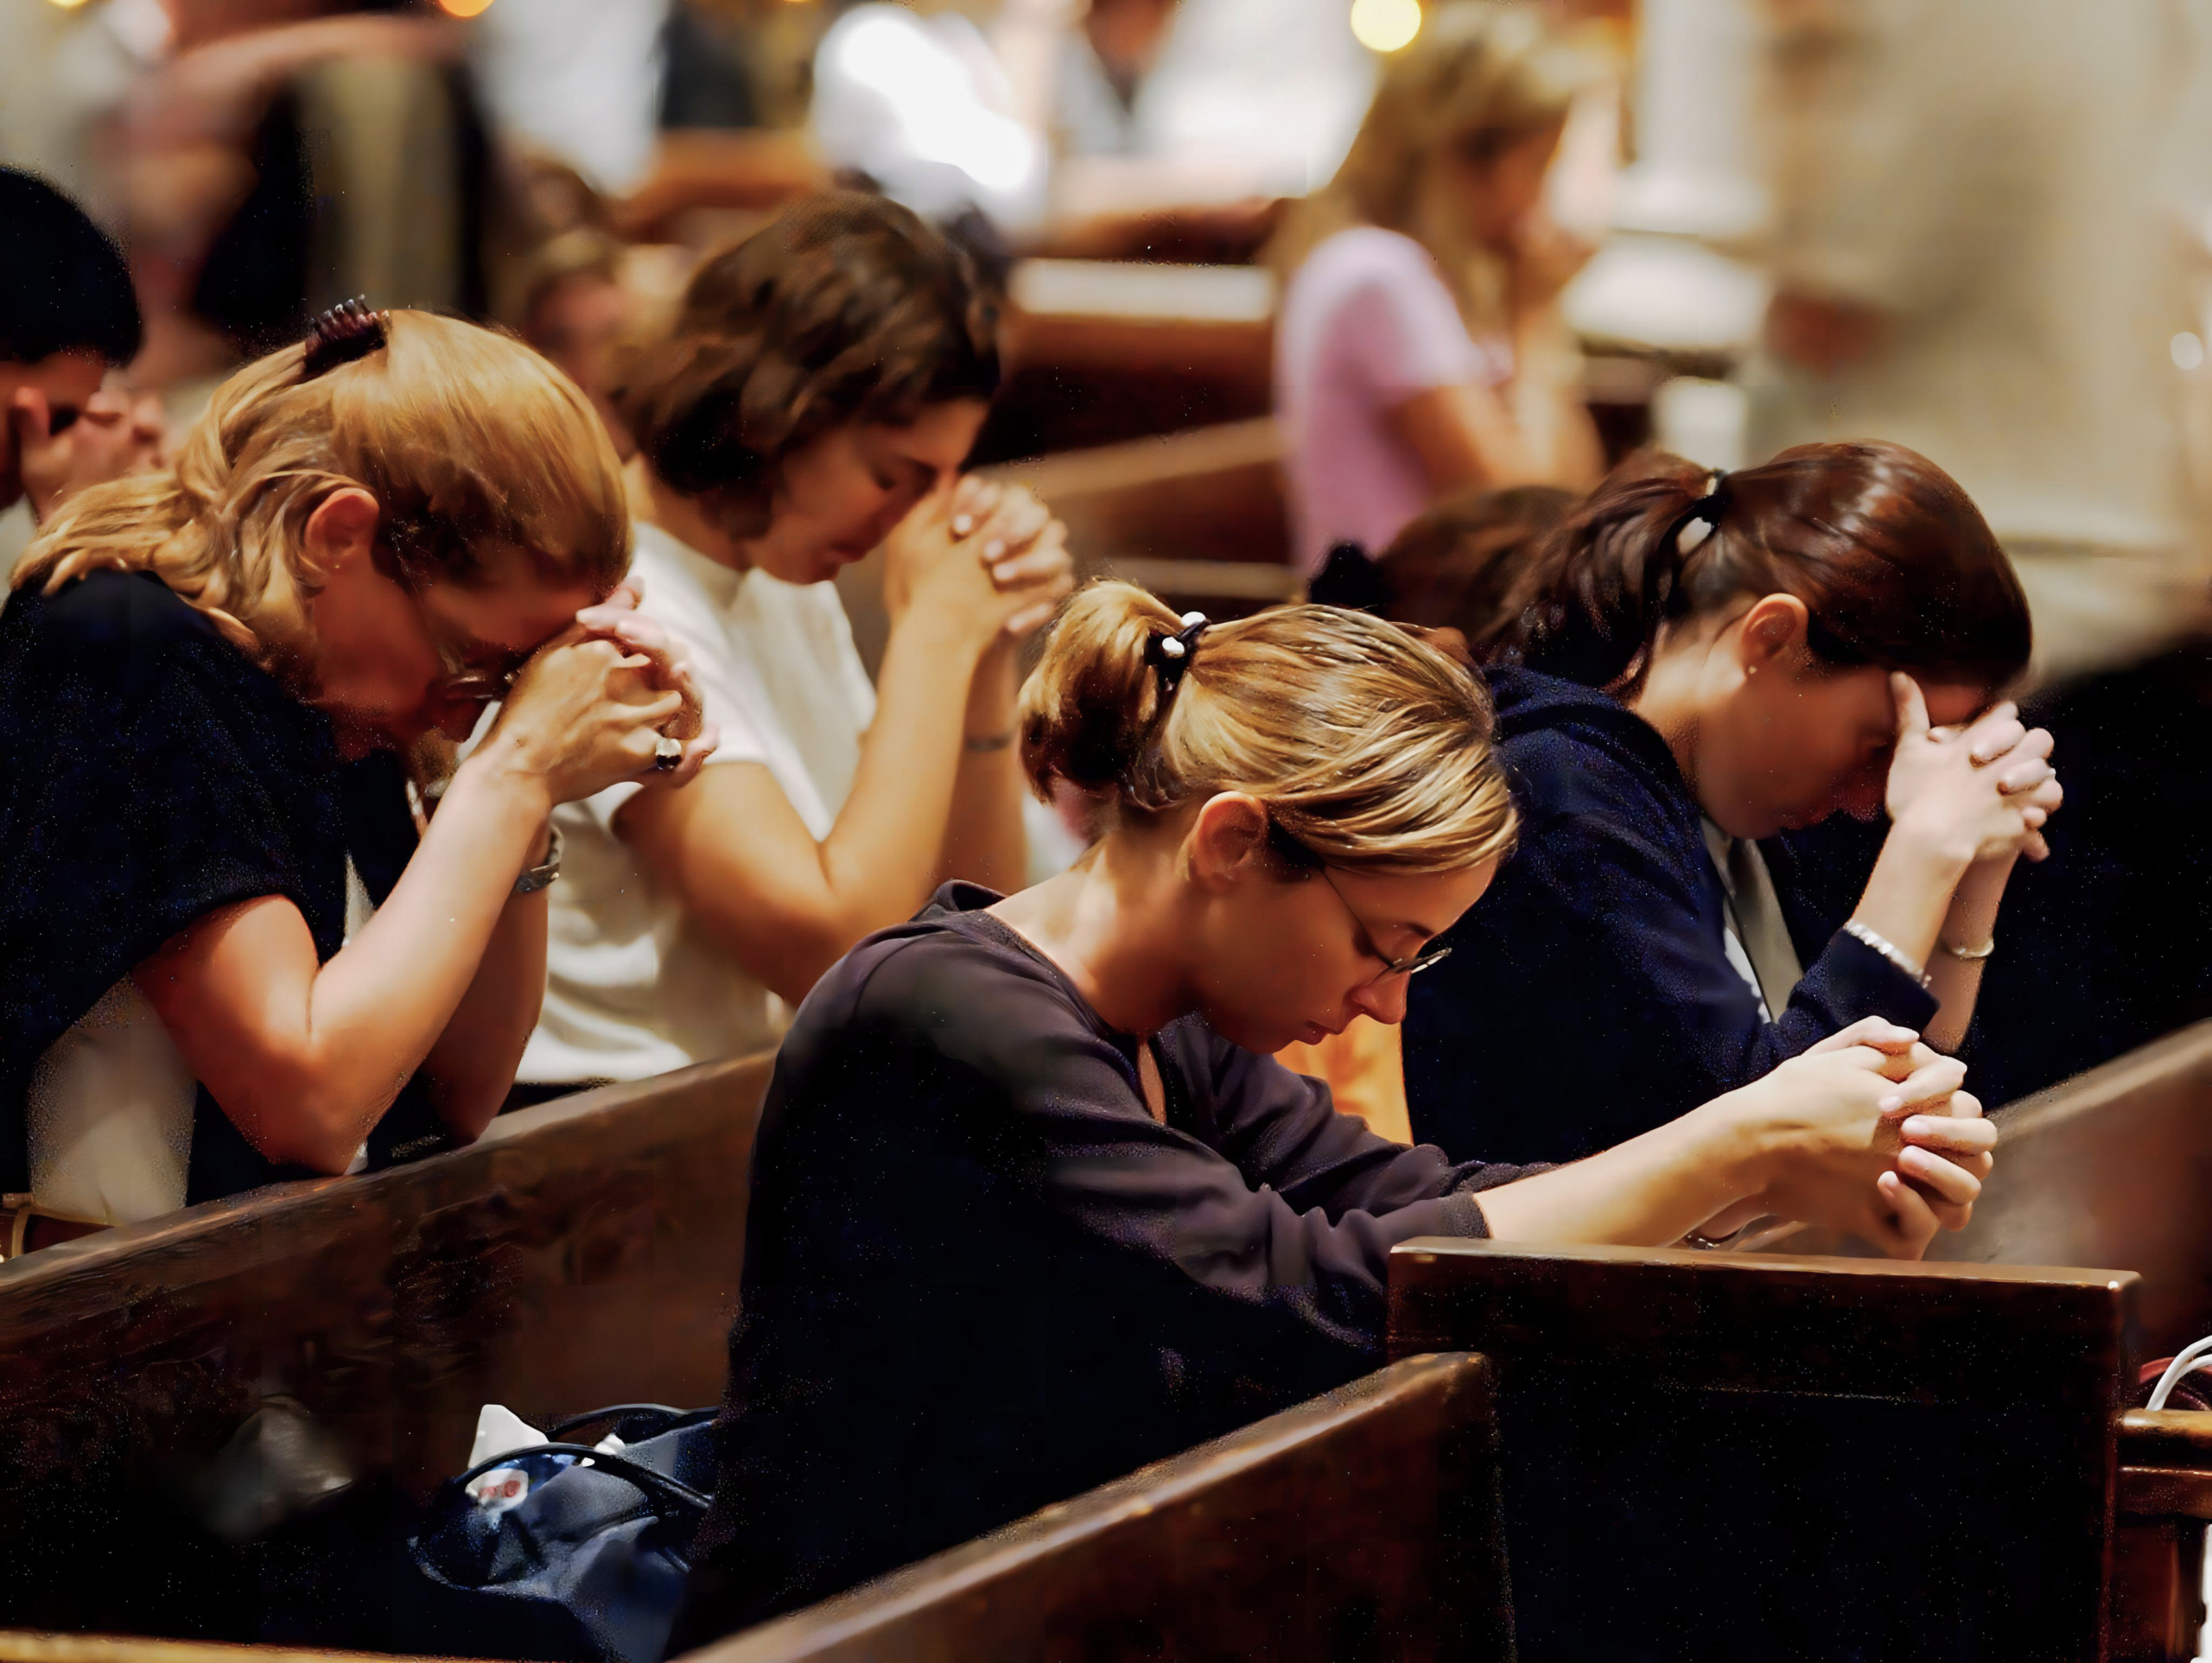 Các tín đồ cầu nguyện tại Nhà thờ Thánh Patrick ở thành phố New York vào ngày 12/09/2001, một ngày sau vụ tấn công khủng bố vào Trung tâm Thương mại Thế giới (Ảnh: Jeff Kowalsky/AFP qua Getty Images)